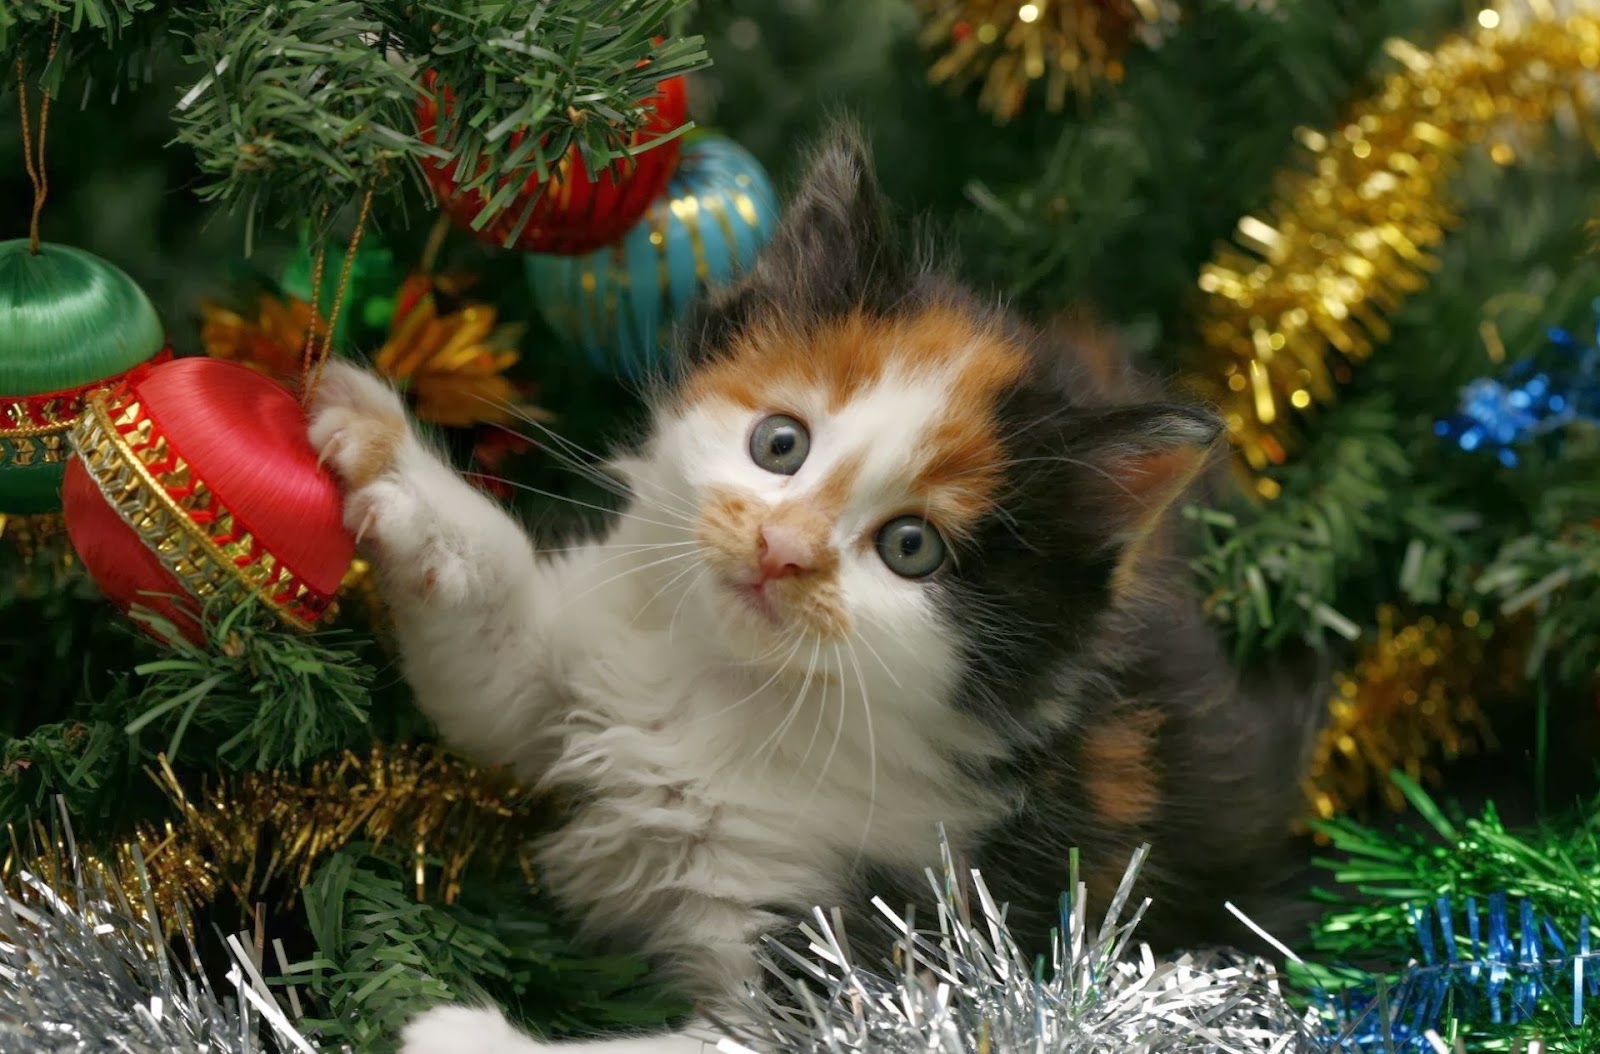 Foto Di Natale Gatti.Natale E Ospiti Come Evitare Stress Al Gatto Per Appassionati Di Gatti